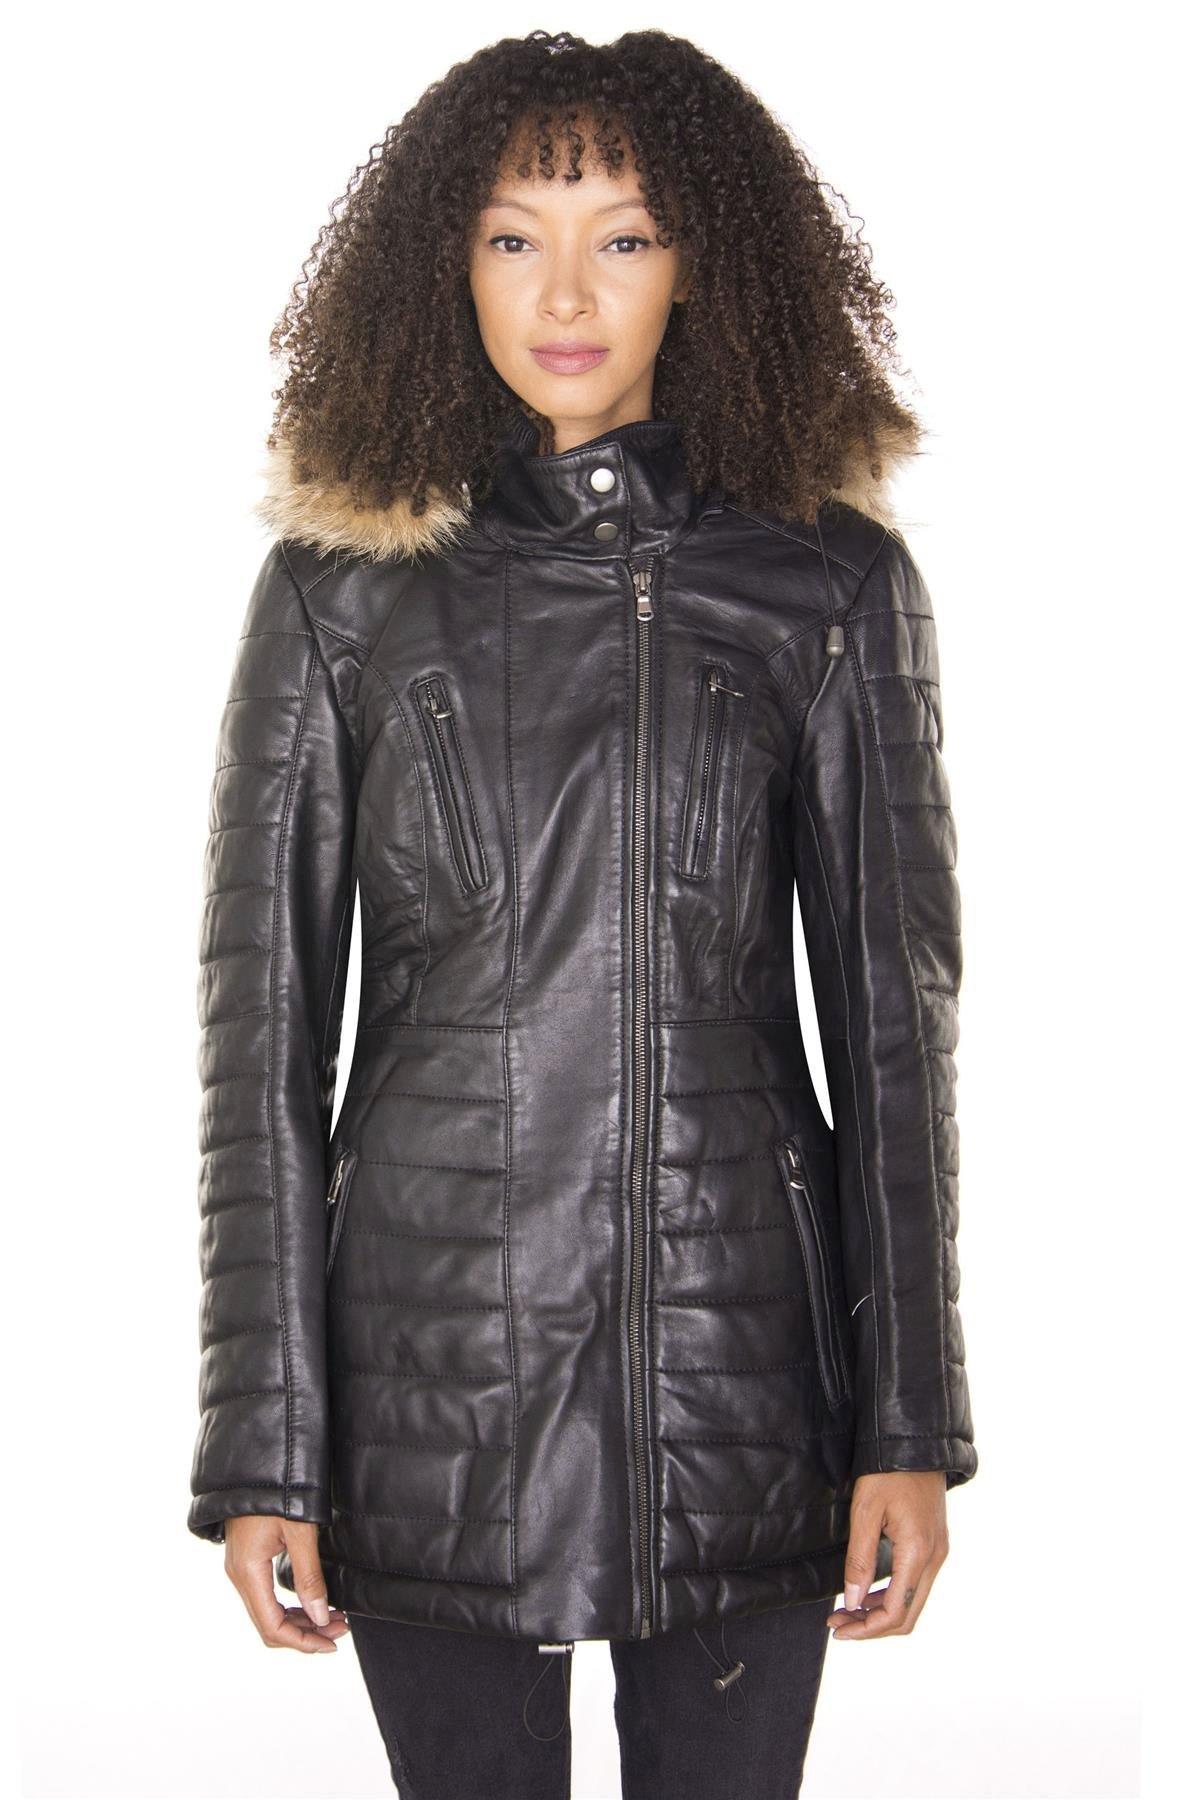 Стеганая кожаная куртка-парка-Куритиба Infinity Leather, черный женская куртка на хлопковом наполнителе длинная облегающая парка с меховым воротником и капюшоном зима 2019